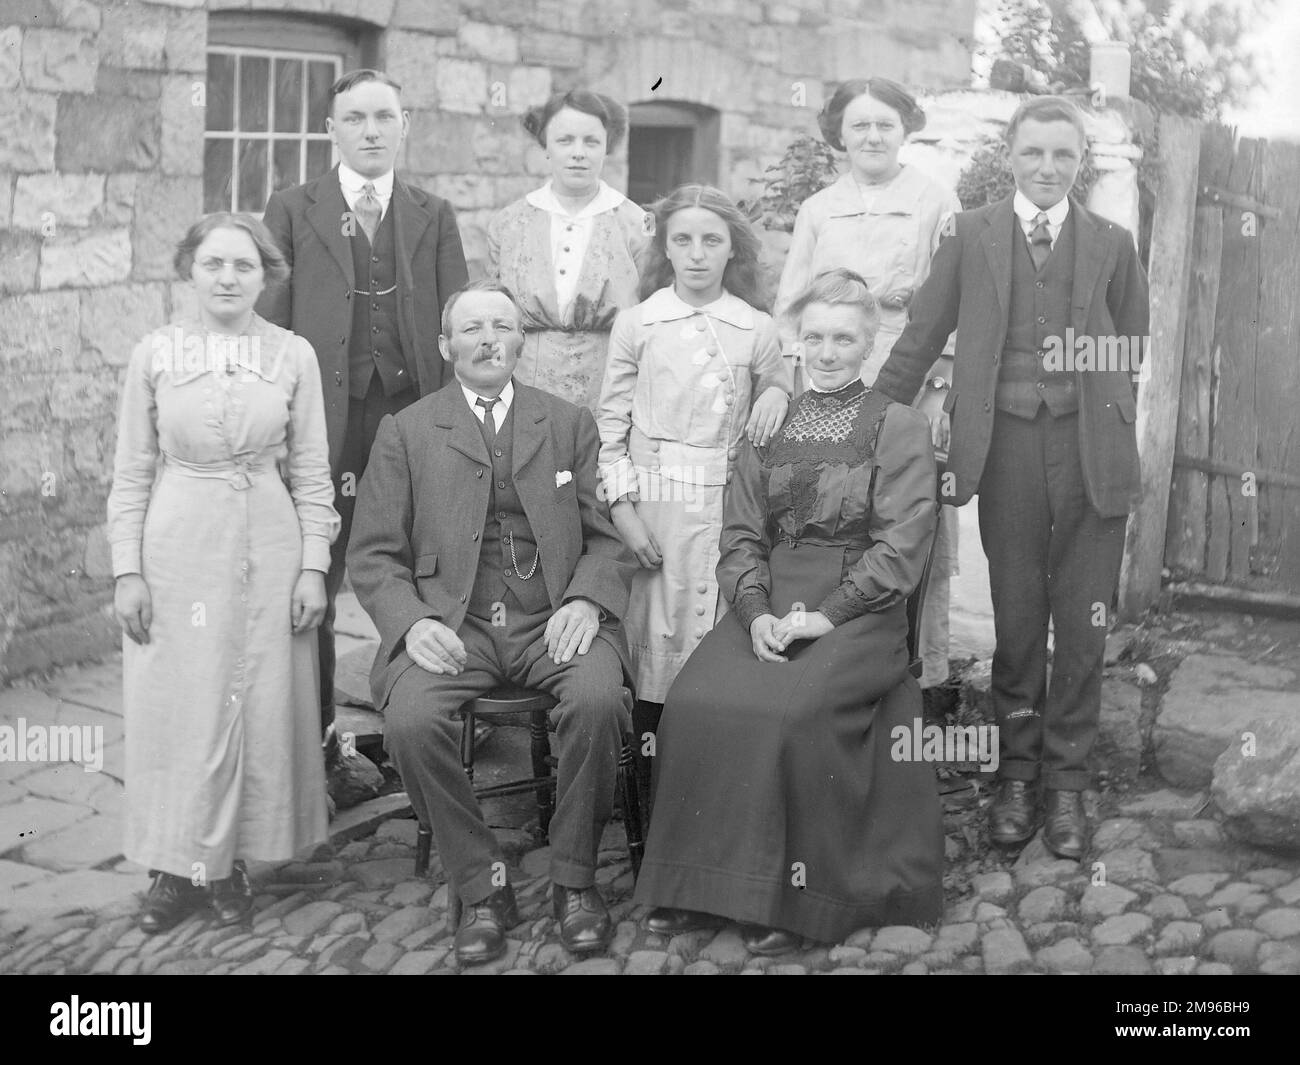 Una famiglia (cinque donne e tre uomini) posa per una fotografia di gruppo in un cortile acciottolato fuori una casa, probabilmente nella zona del Galles centrale. Foto Stock